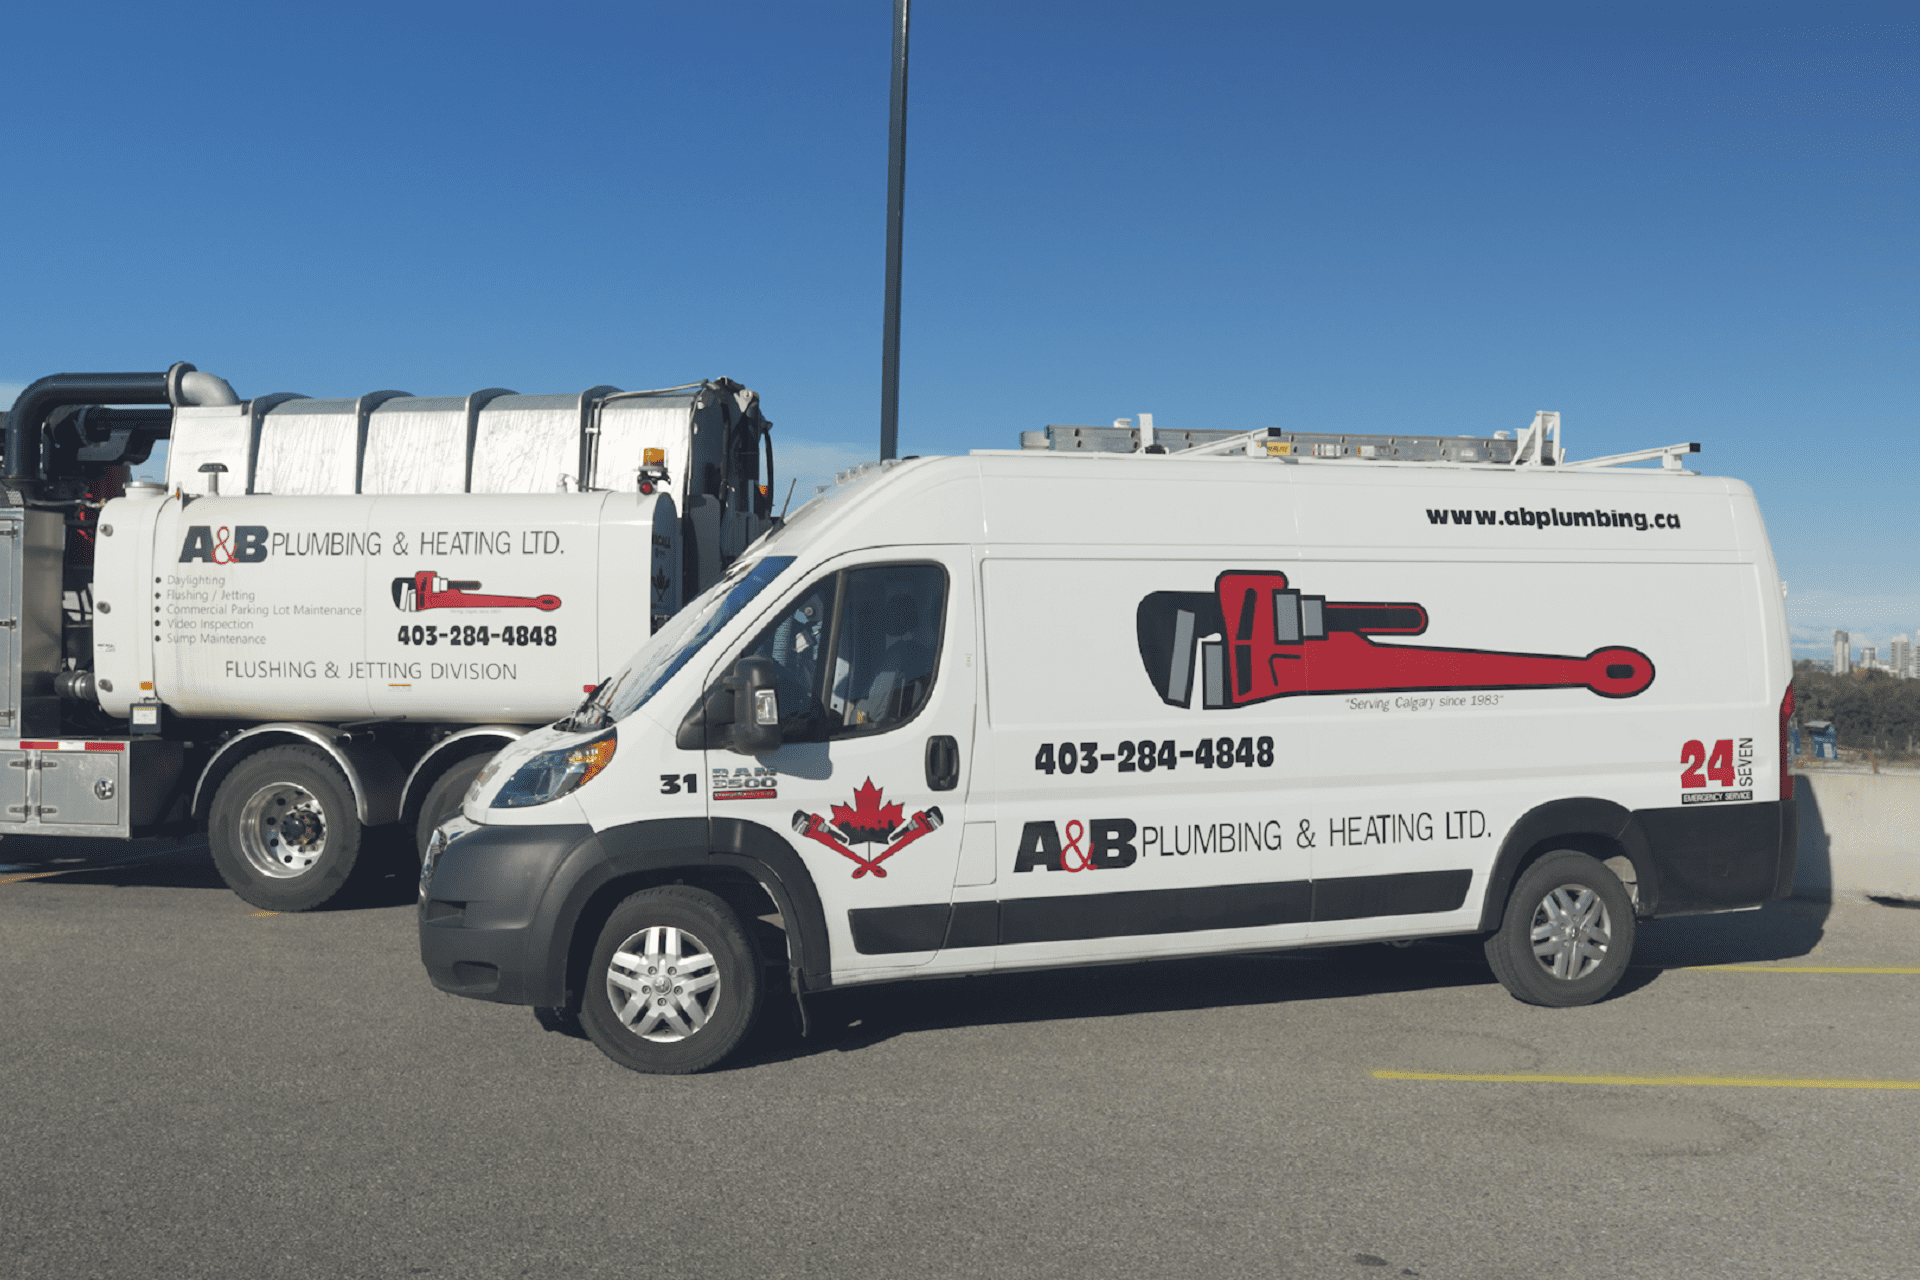 A&B Plumbing & Heating Service Van